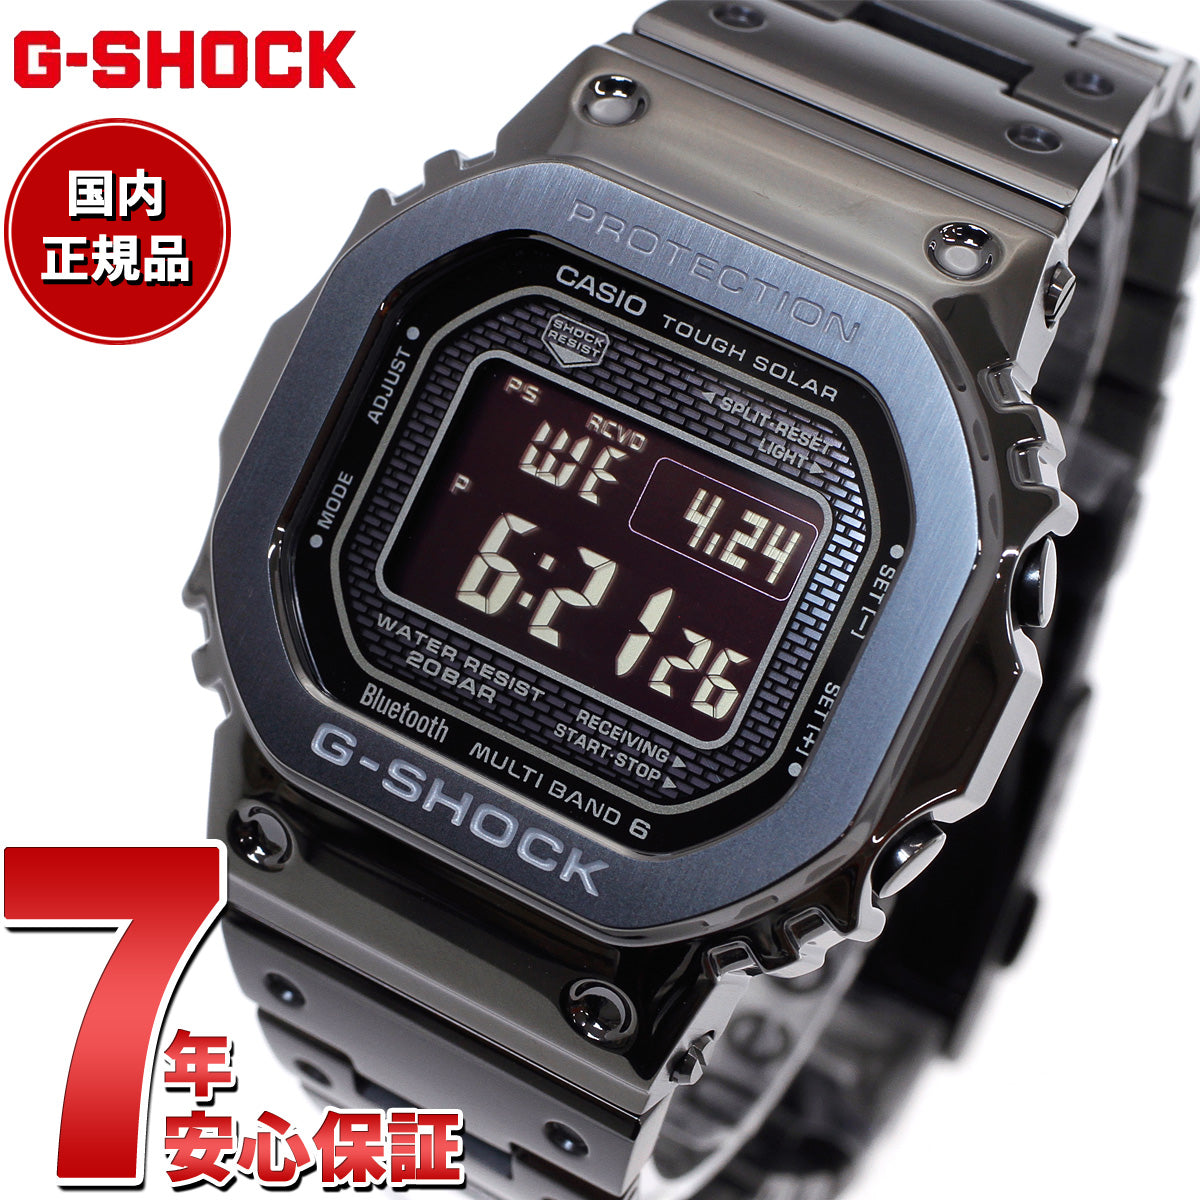 海外出荷CASIO 腕時計 G-SHOCK GMW-B5000GD-1JF 電波ソーラー ベルト約22cm フルメタル ブラック Bluetooth対応 箱・取説付き その他